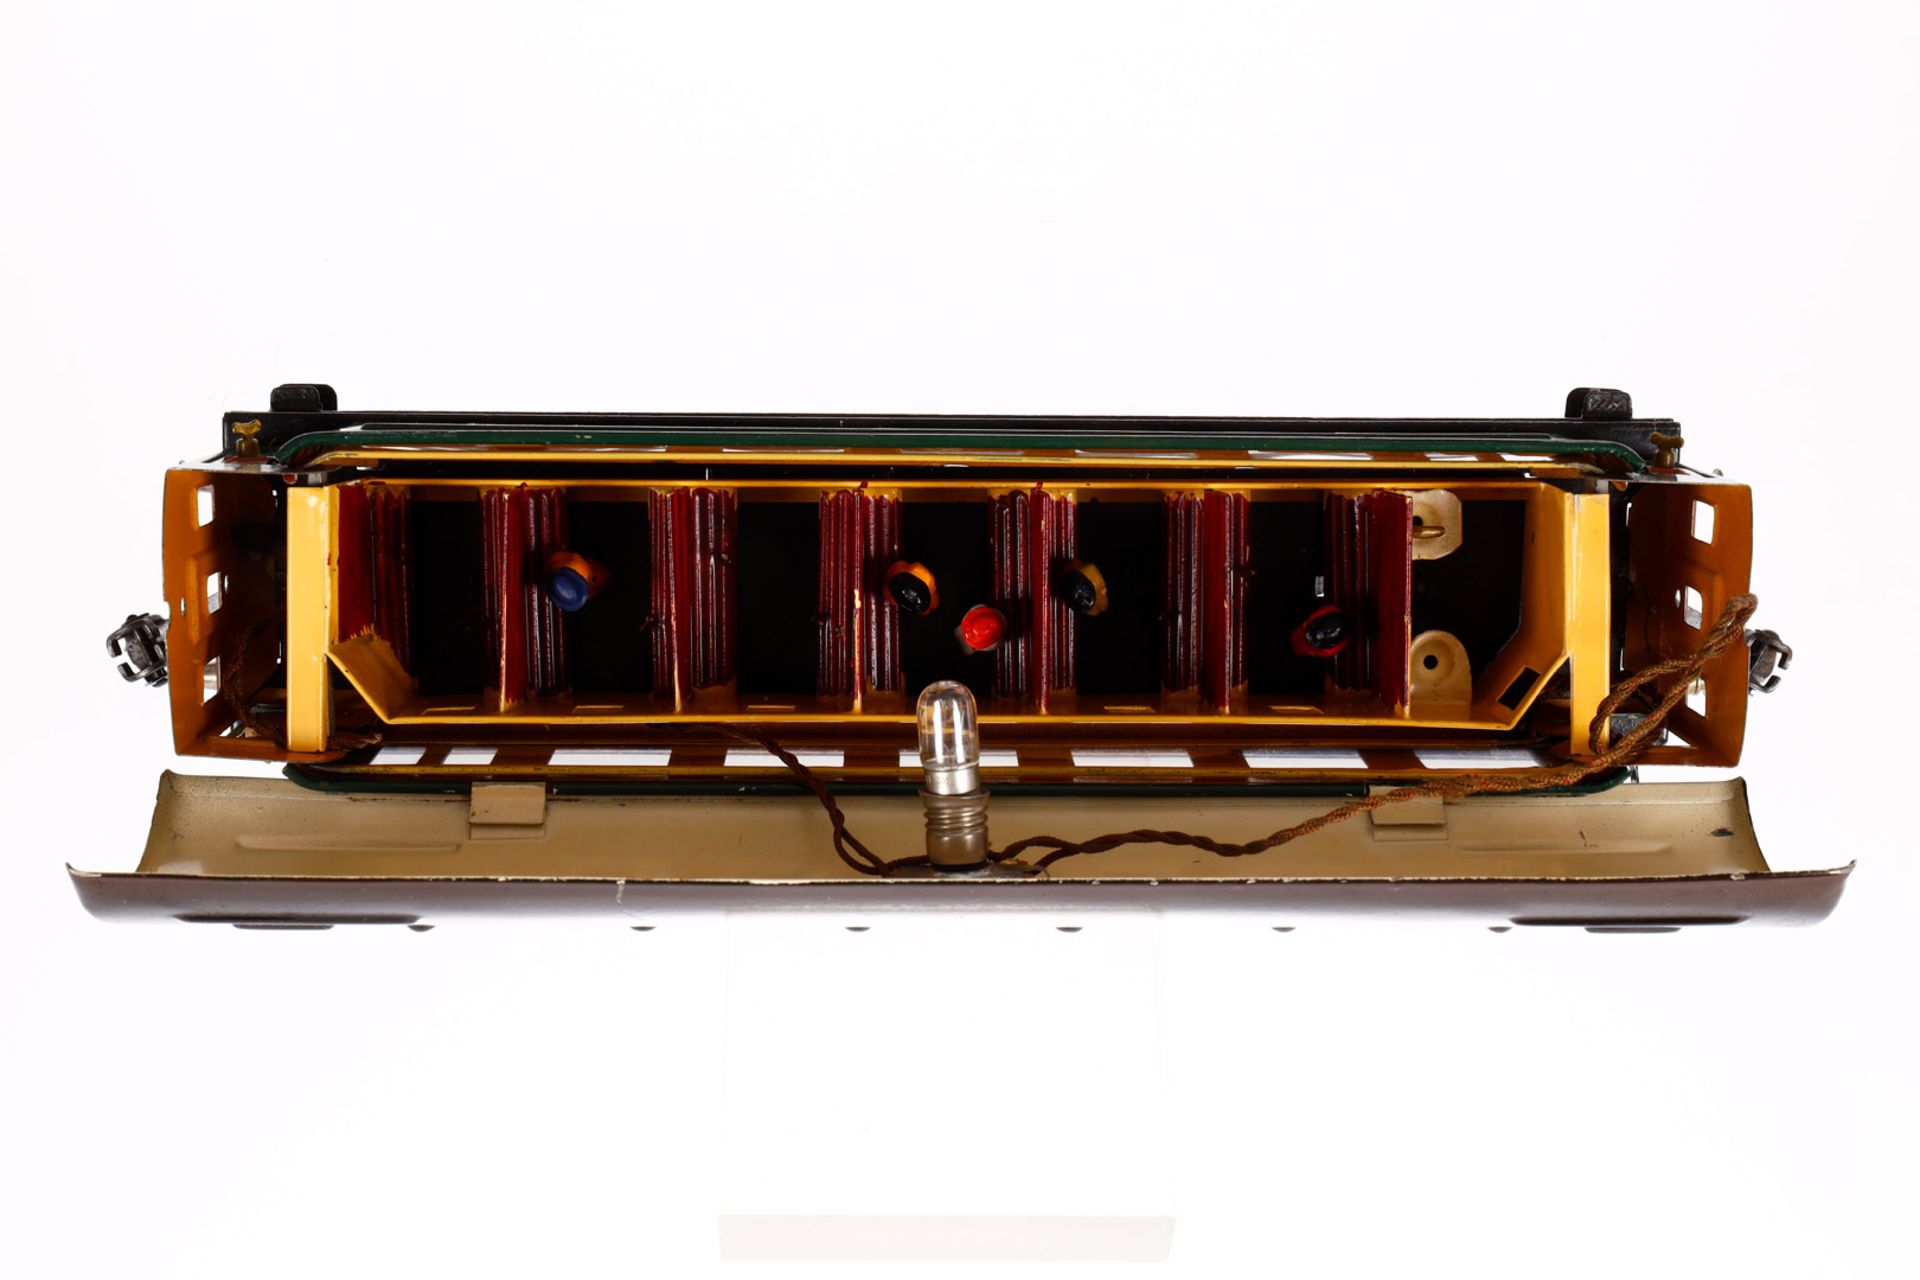 Märklin Personenwagen 1841 G, Spur 0, CL, mit Inneneinrichtung, 4 AT, Gussrädern, Schildern, - Bild 5 aus 6